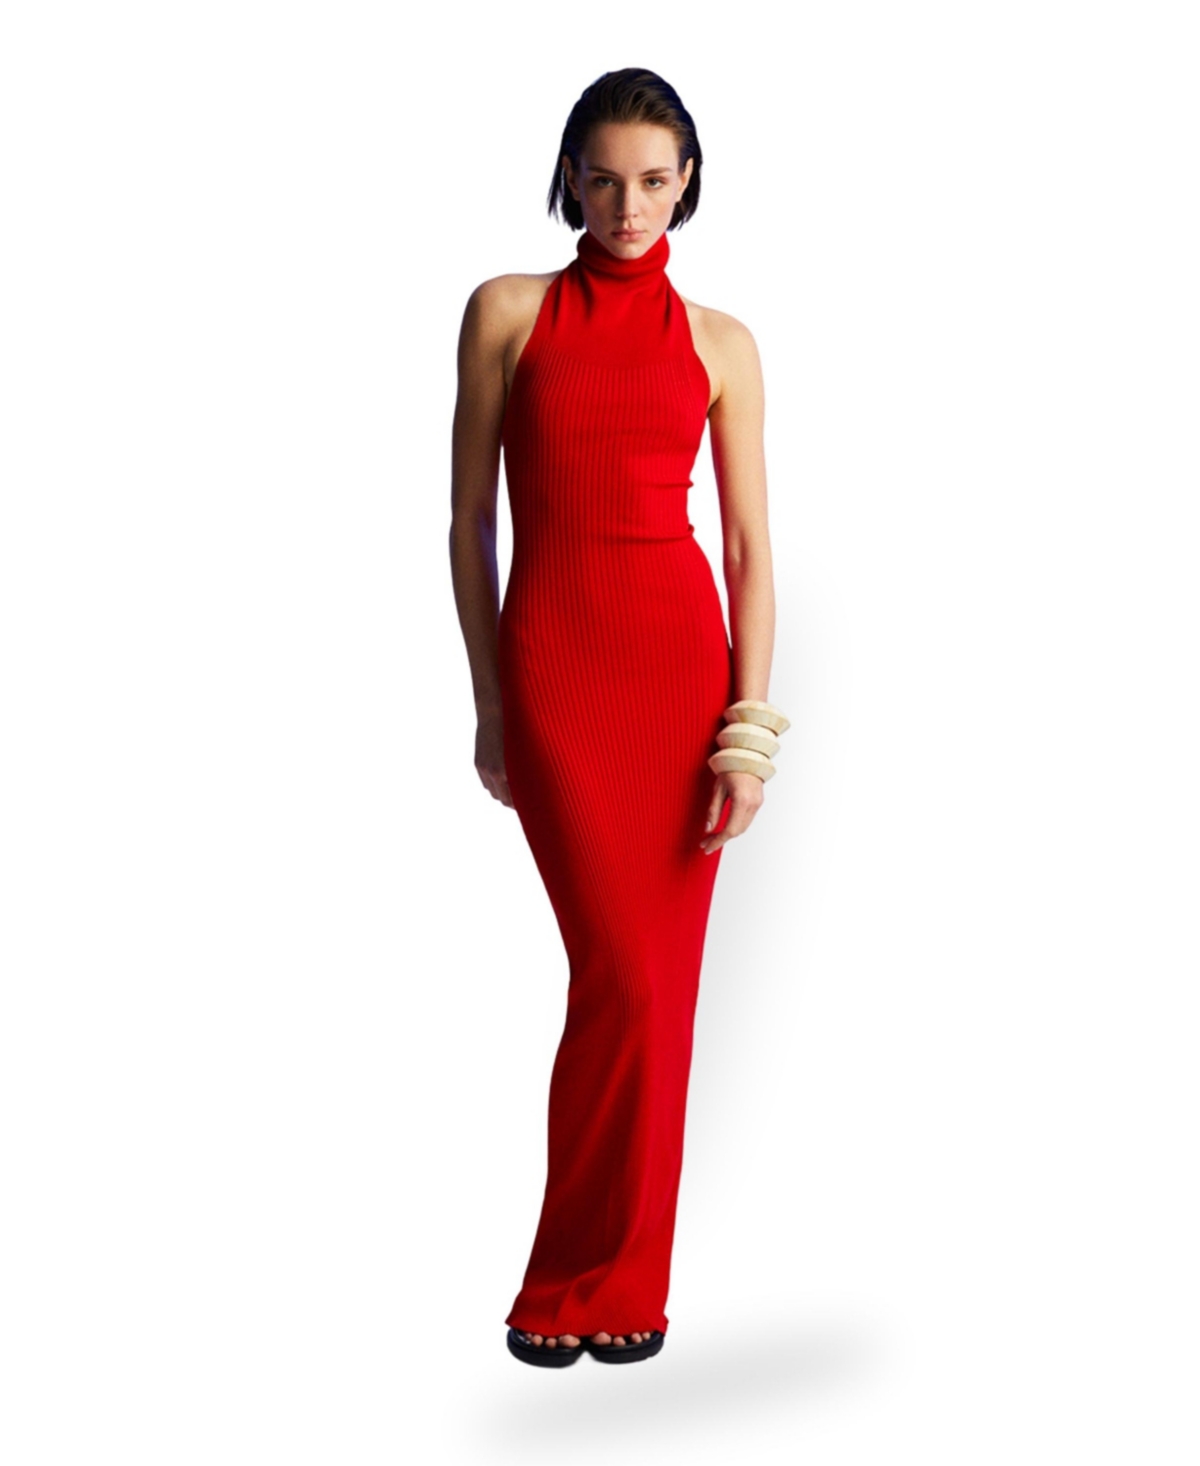 Women's Turtleneck Long Dress - Red